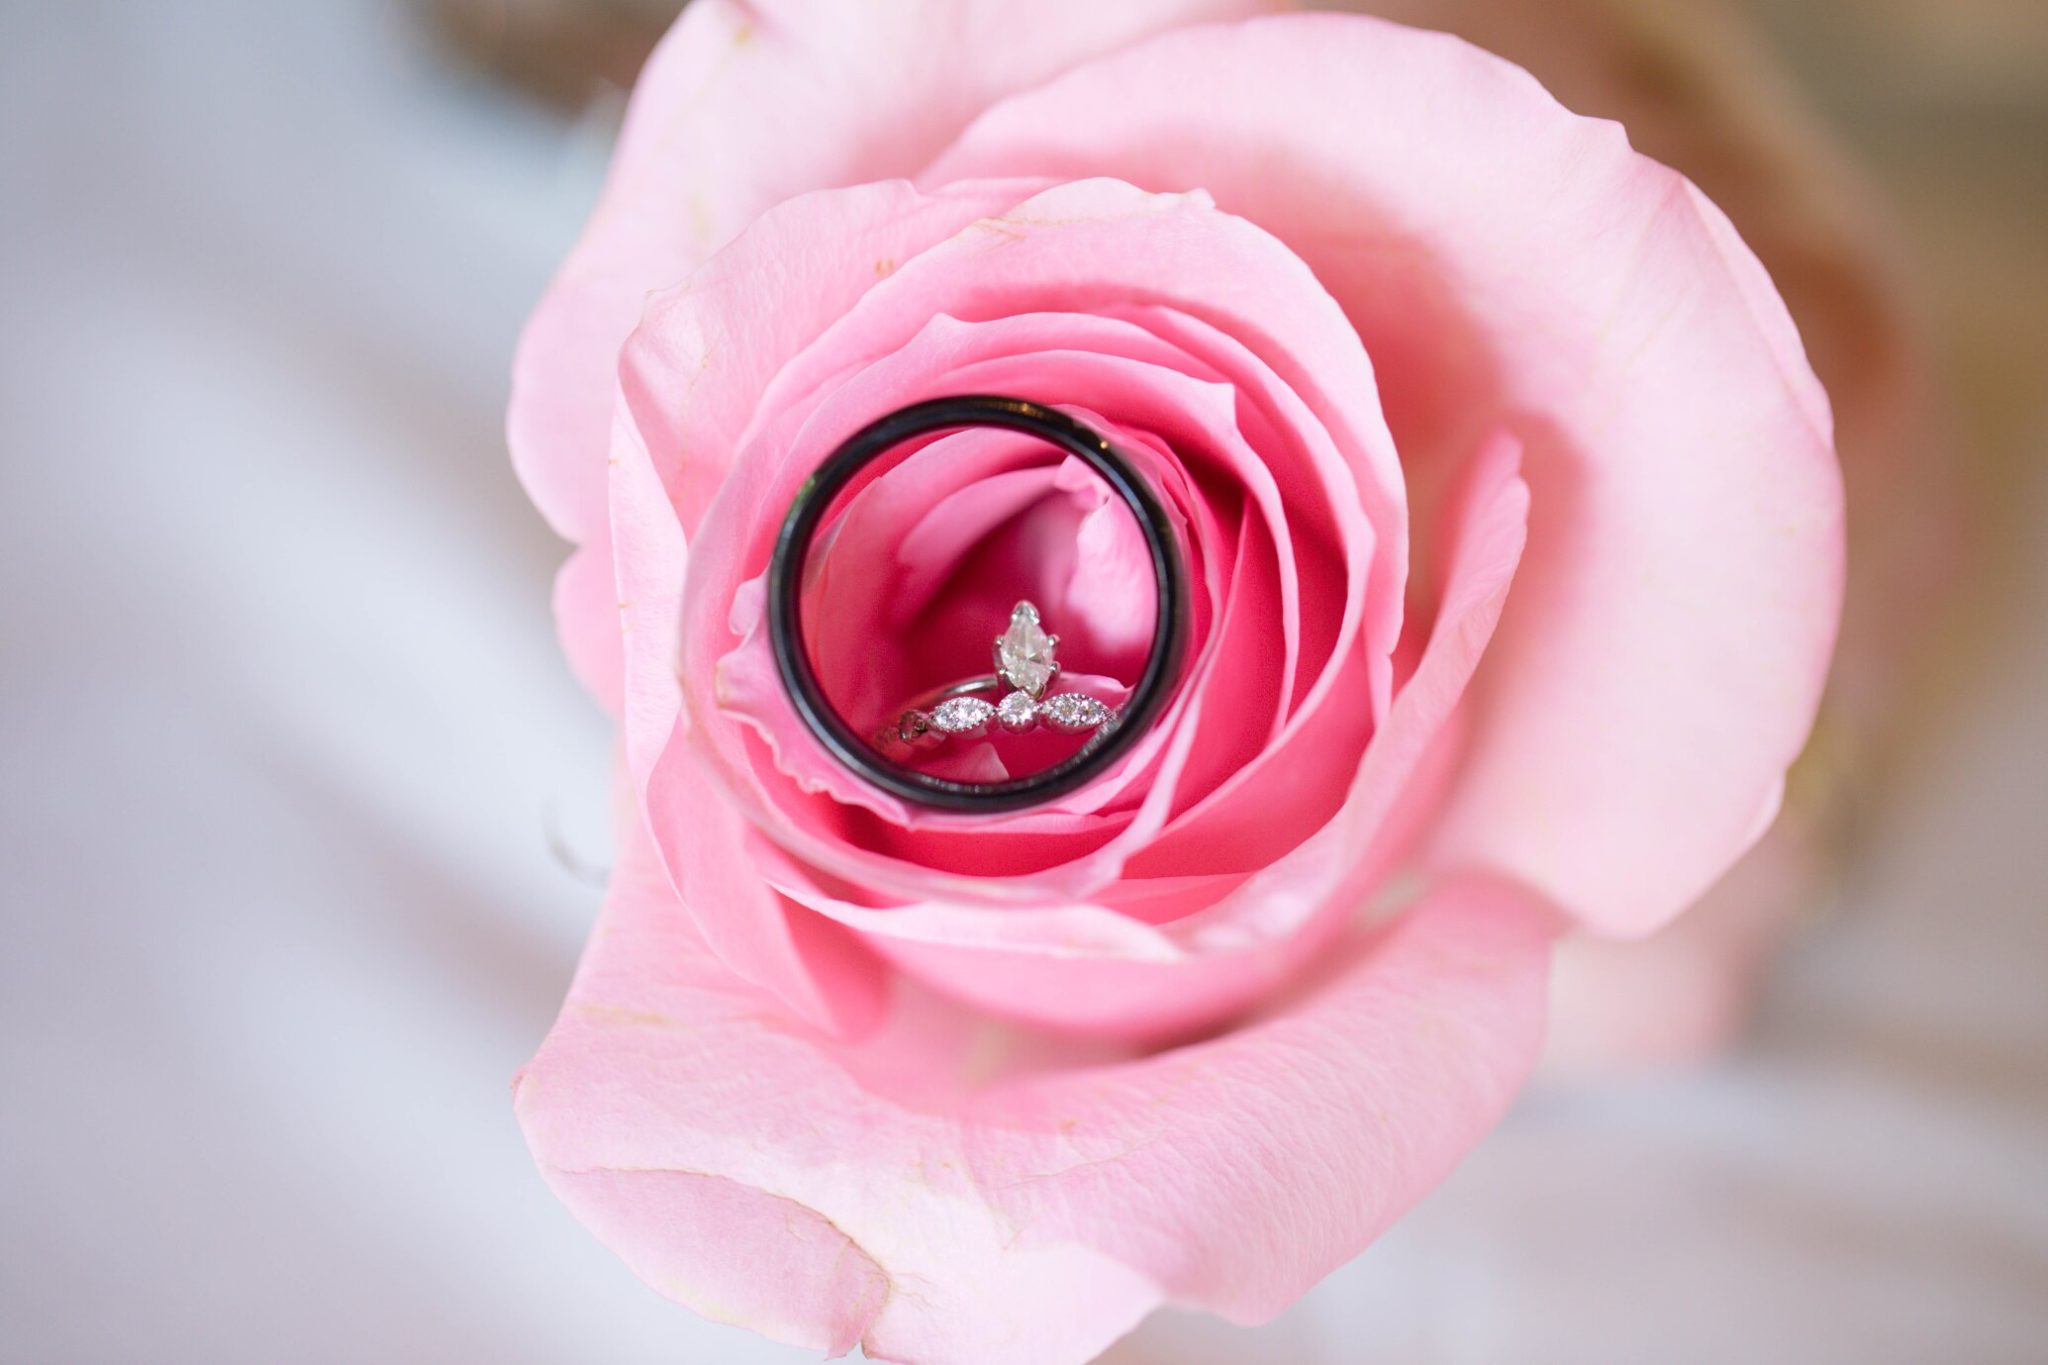 Vintage Engagement Ring set in a Rose 